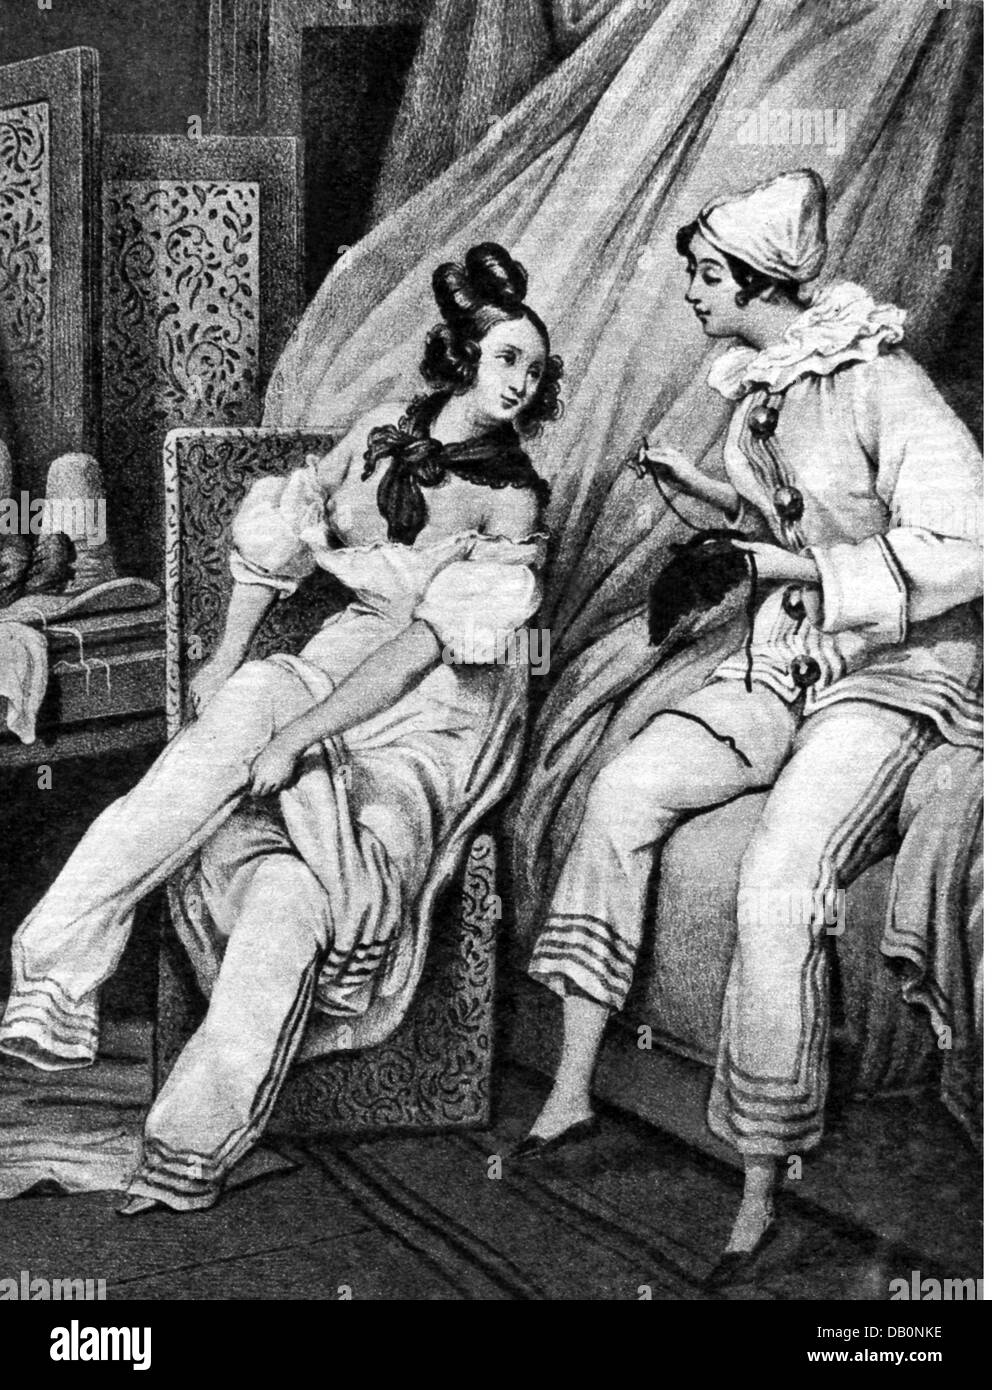 Festivités, carnaval, jeune femme se dressant comme Pierrots, lithographie, par Paul Gavarni (1804 - 1866), vers 1848, droits additionnels-Clearences-non disponible Banque D'Images